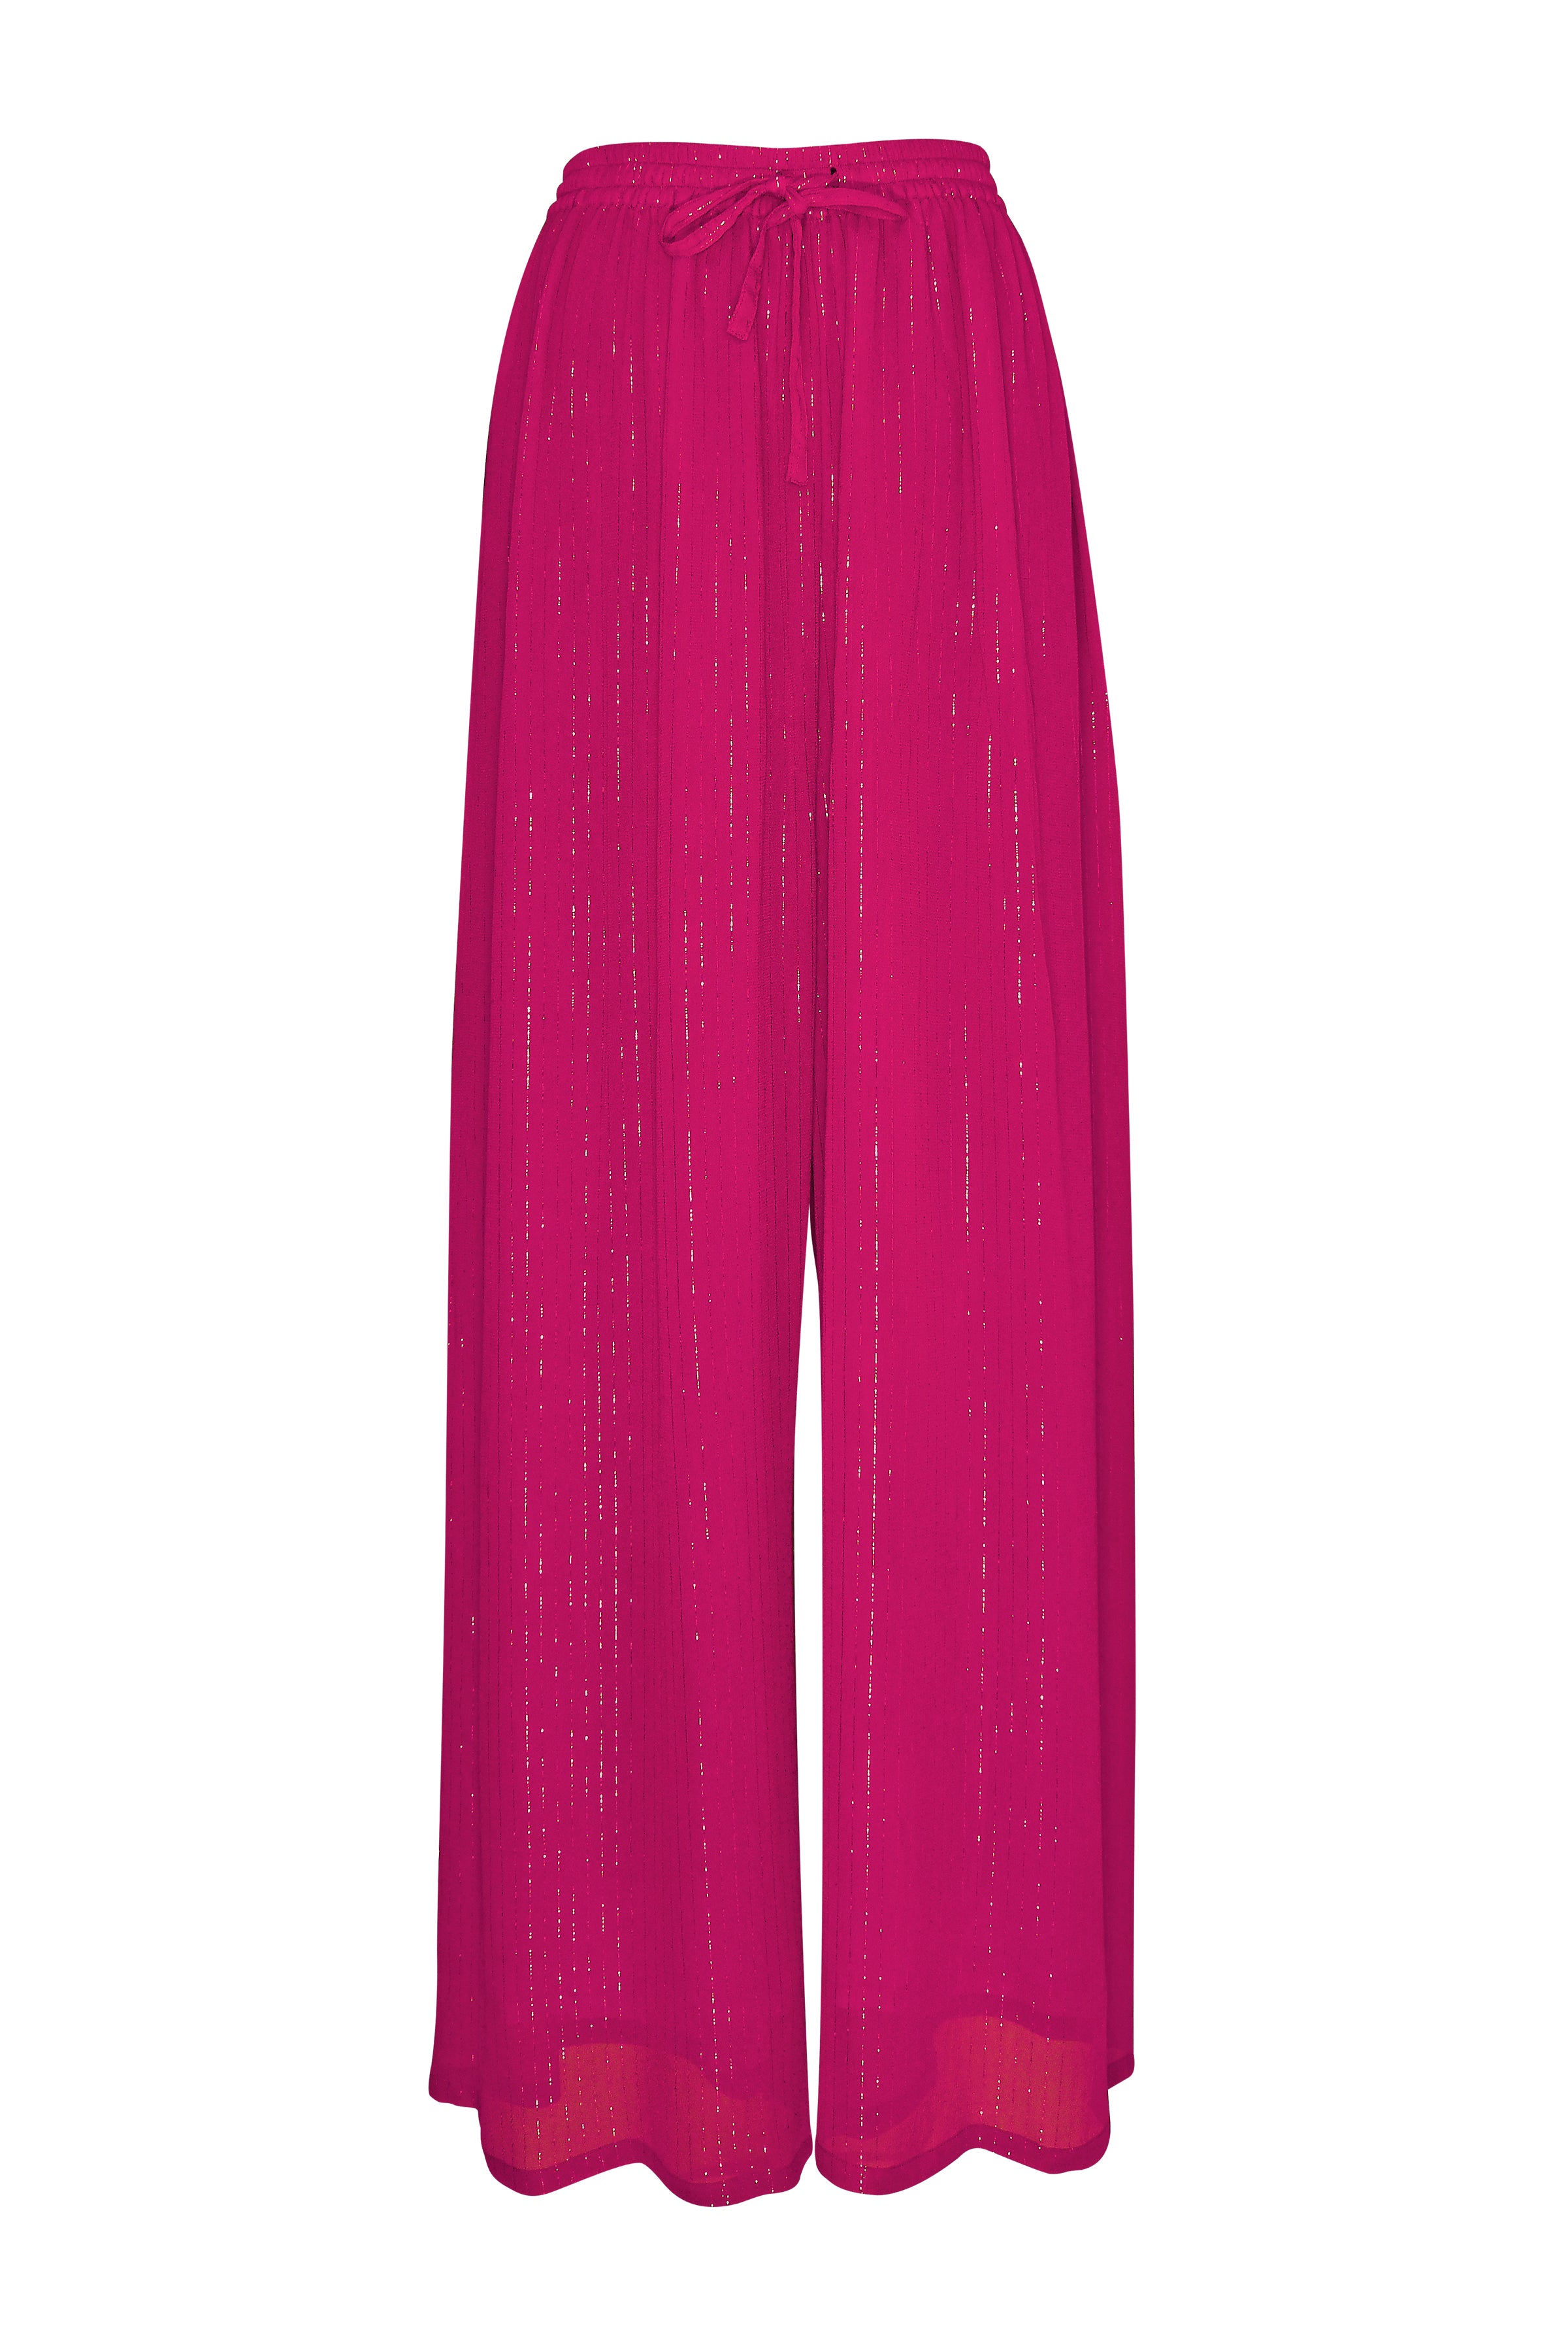 Hot Pink Lurex Pants - saisankoh